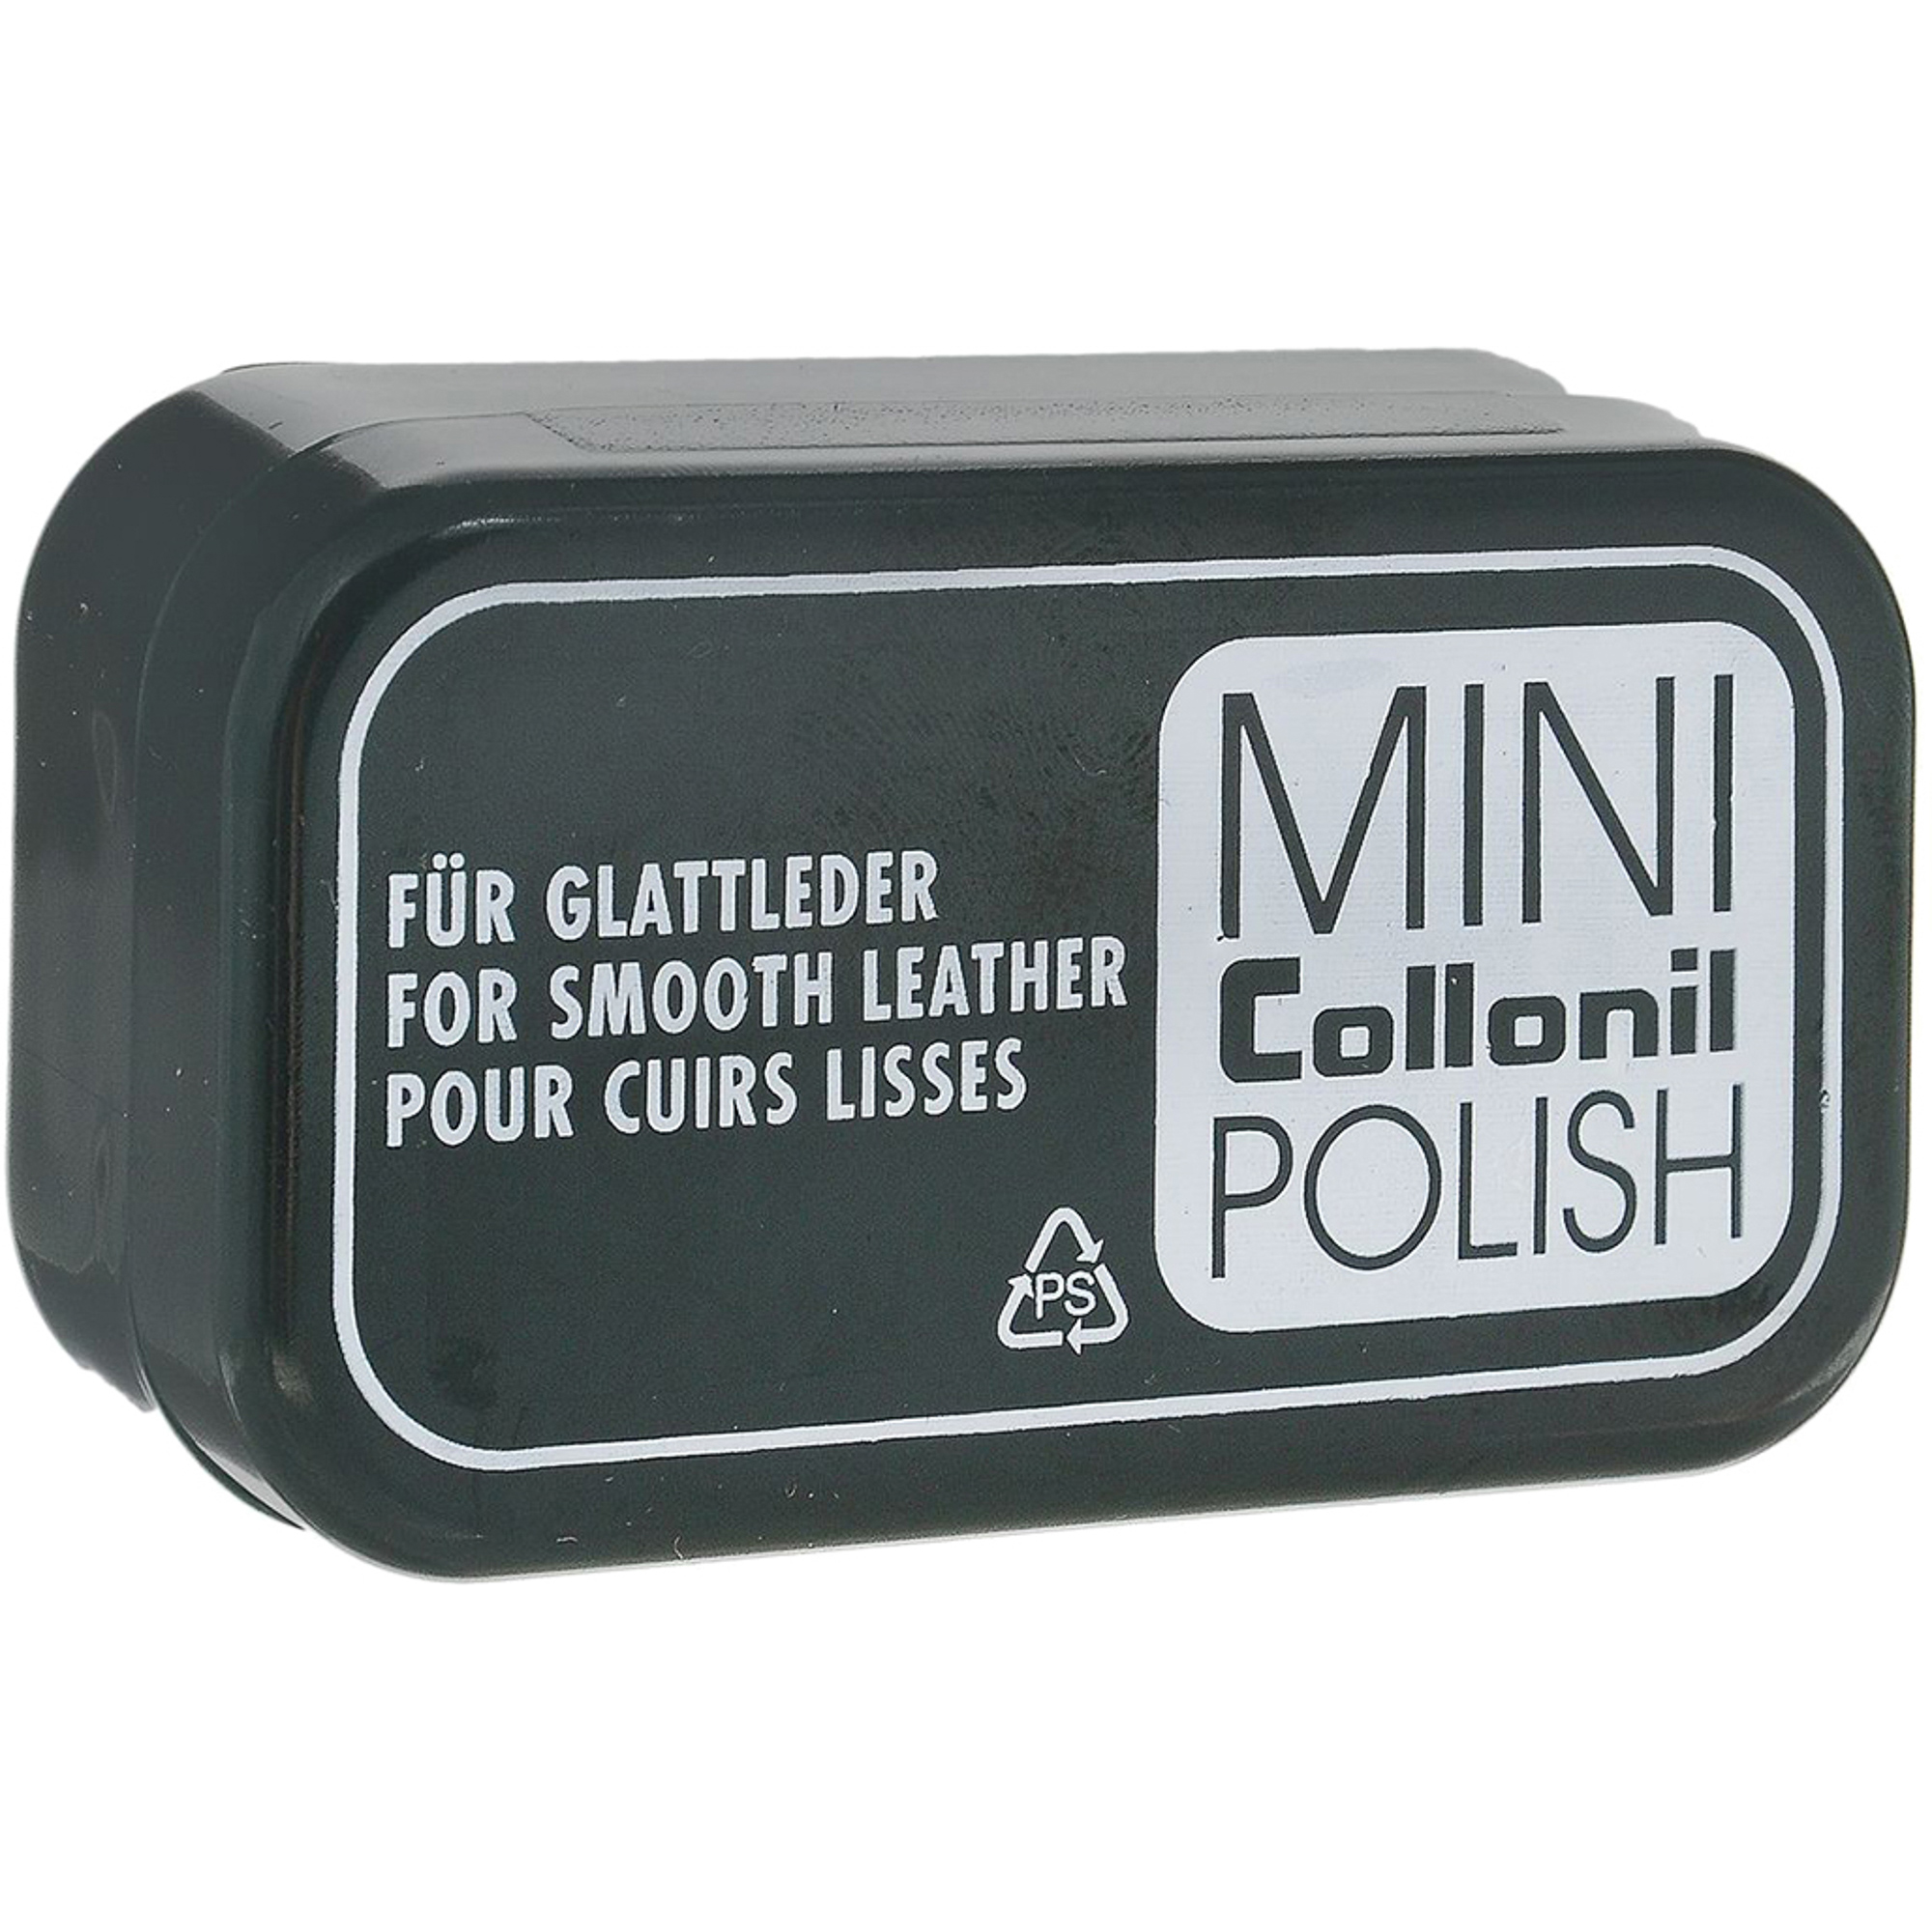 Губка для полировки Collonil Mini Polish губка для полировки обуви из гладкой кожи sitil